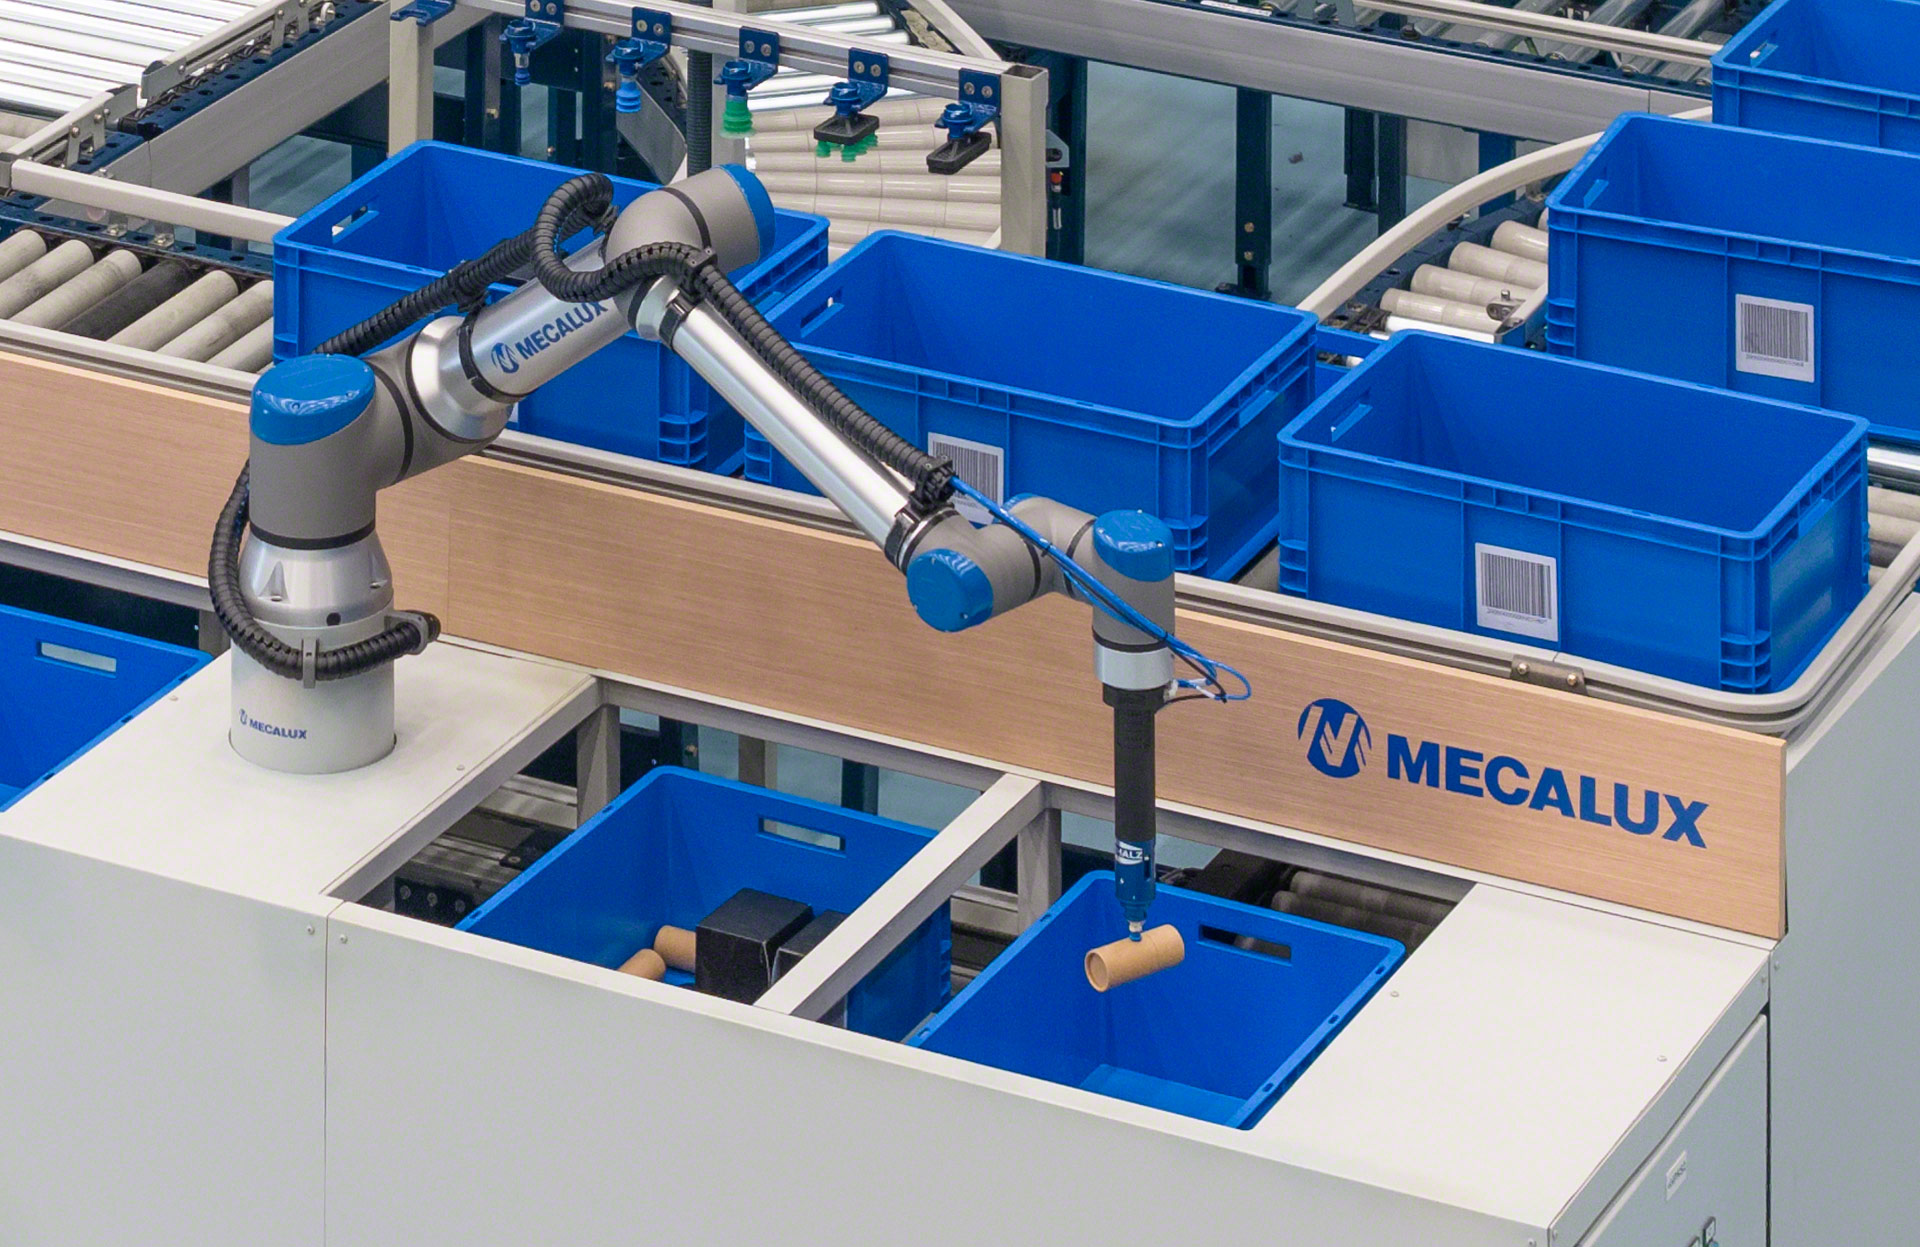 El robot de picking de Mecalux automatiza completamente la preparación de pedidos